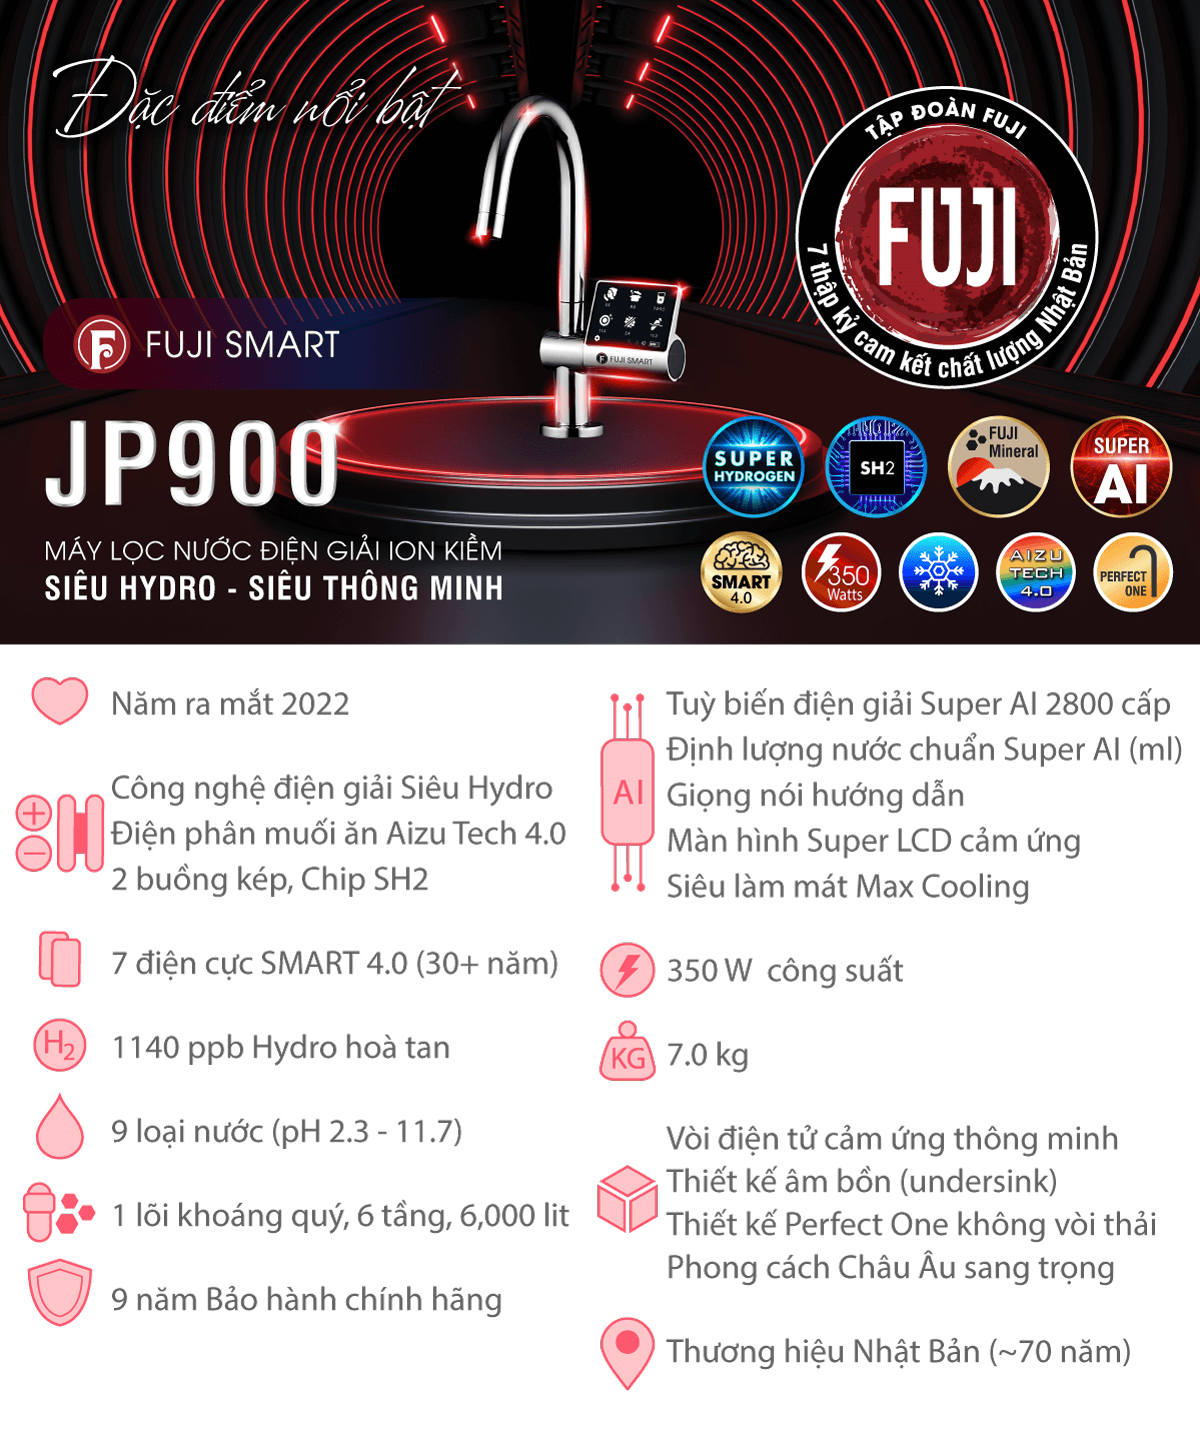 Fuji Smart JP900 hội tụ tinh hoa công nghệ điện giải